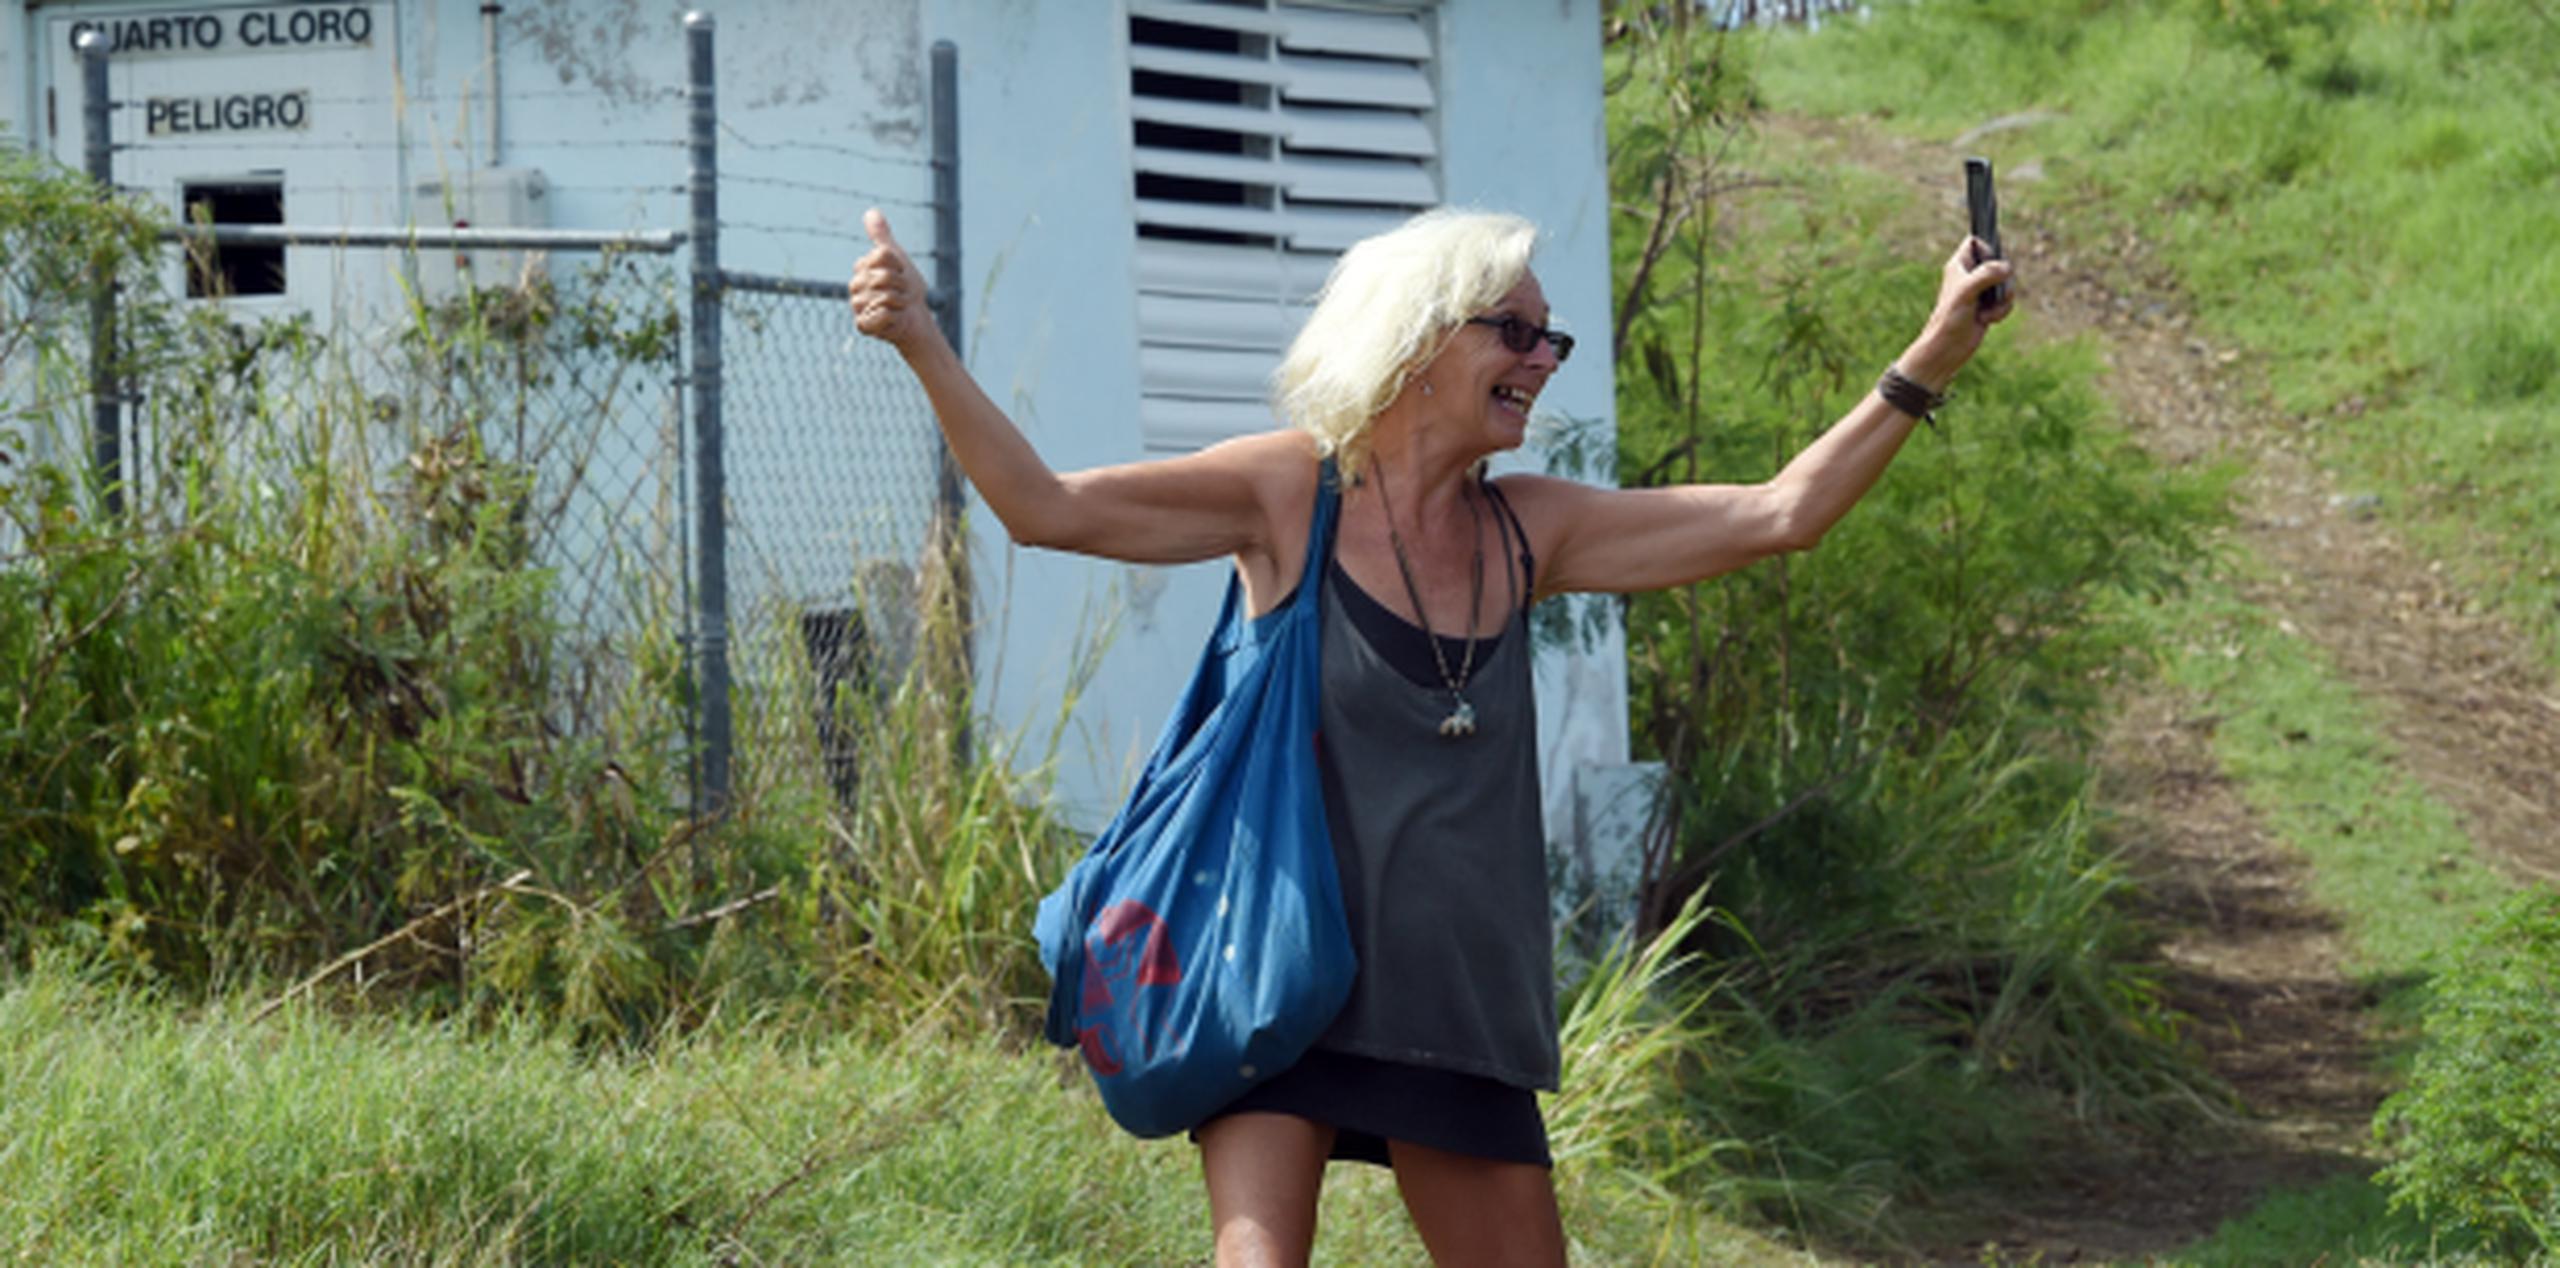 La cara de Dawn Keon es de felicidad al celebrar conseguir señal de celular en el área de Tampico, en Culebra, y poder comunicarse con los suyos tras el paso del huracán Irma y estar incomunicada. (andre.kang@gfrmedia.com)